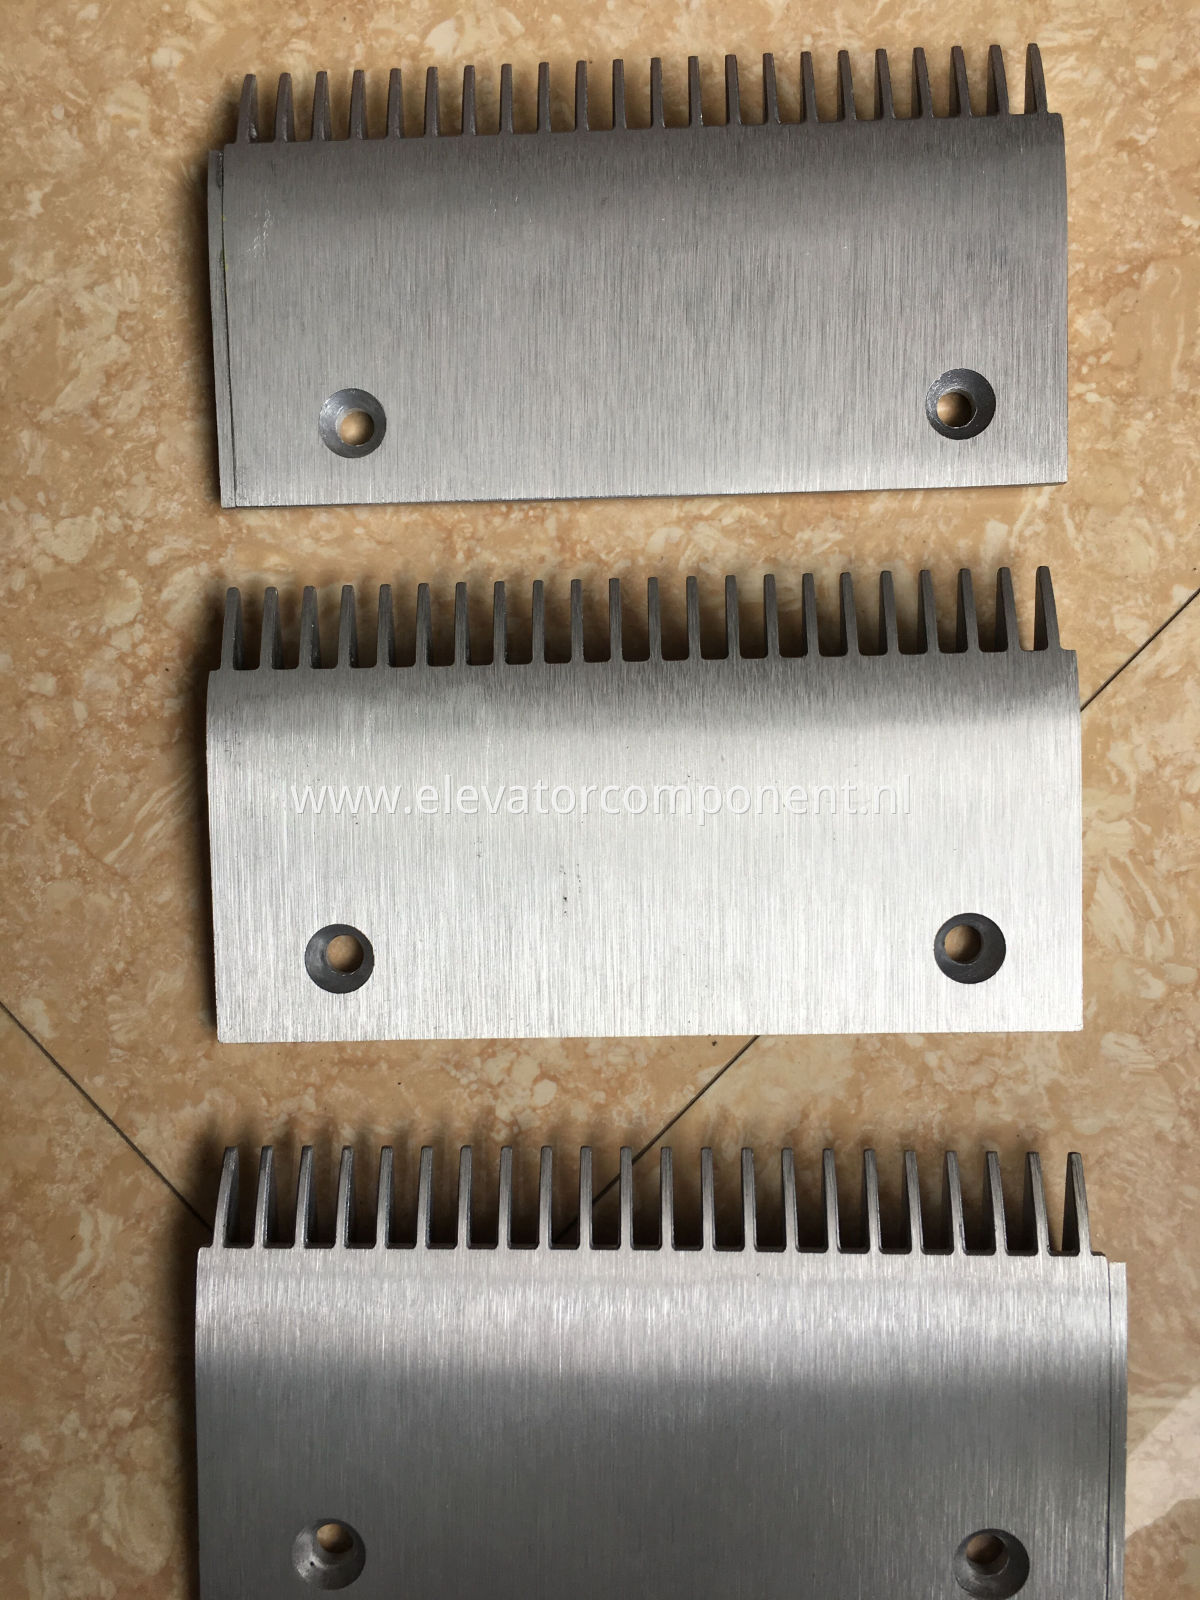 Aluminium Alloy Comb Plate for Sch****** 9300 Escalators